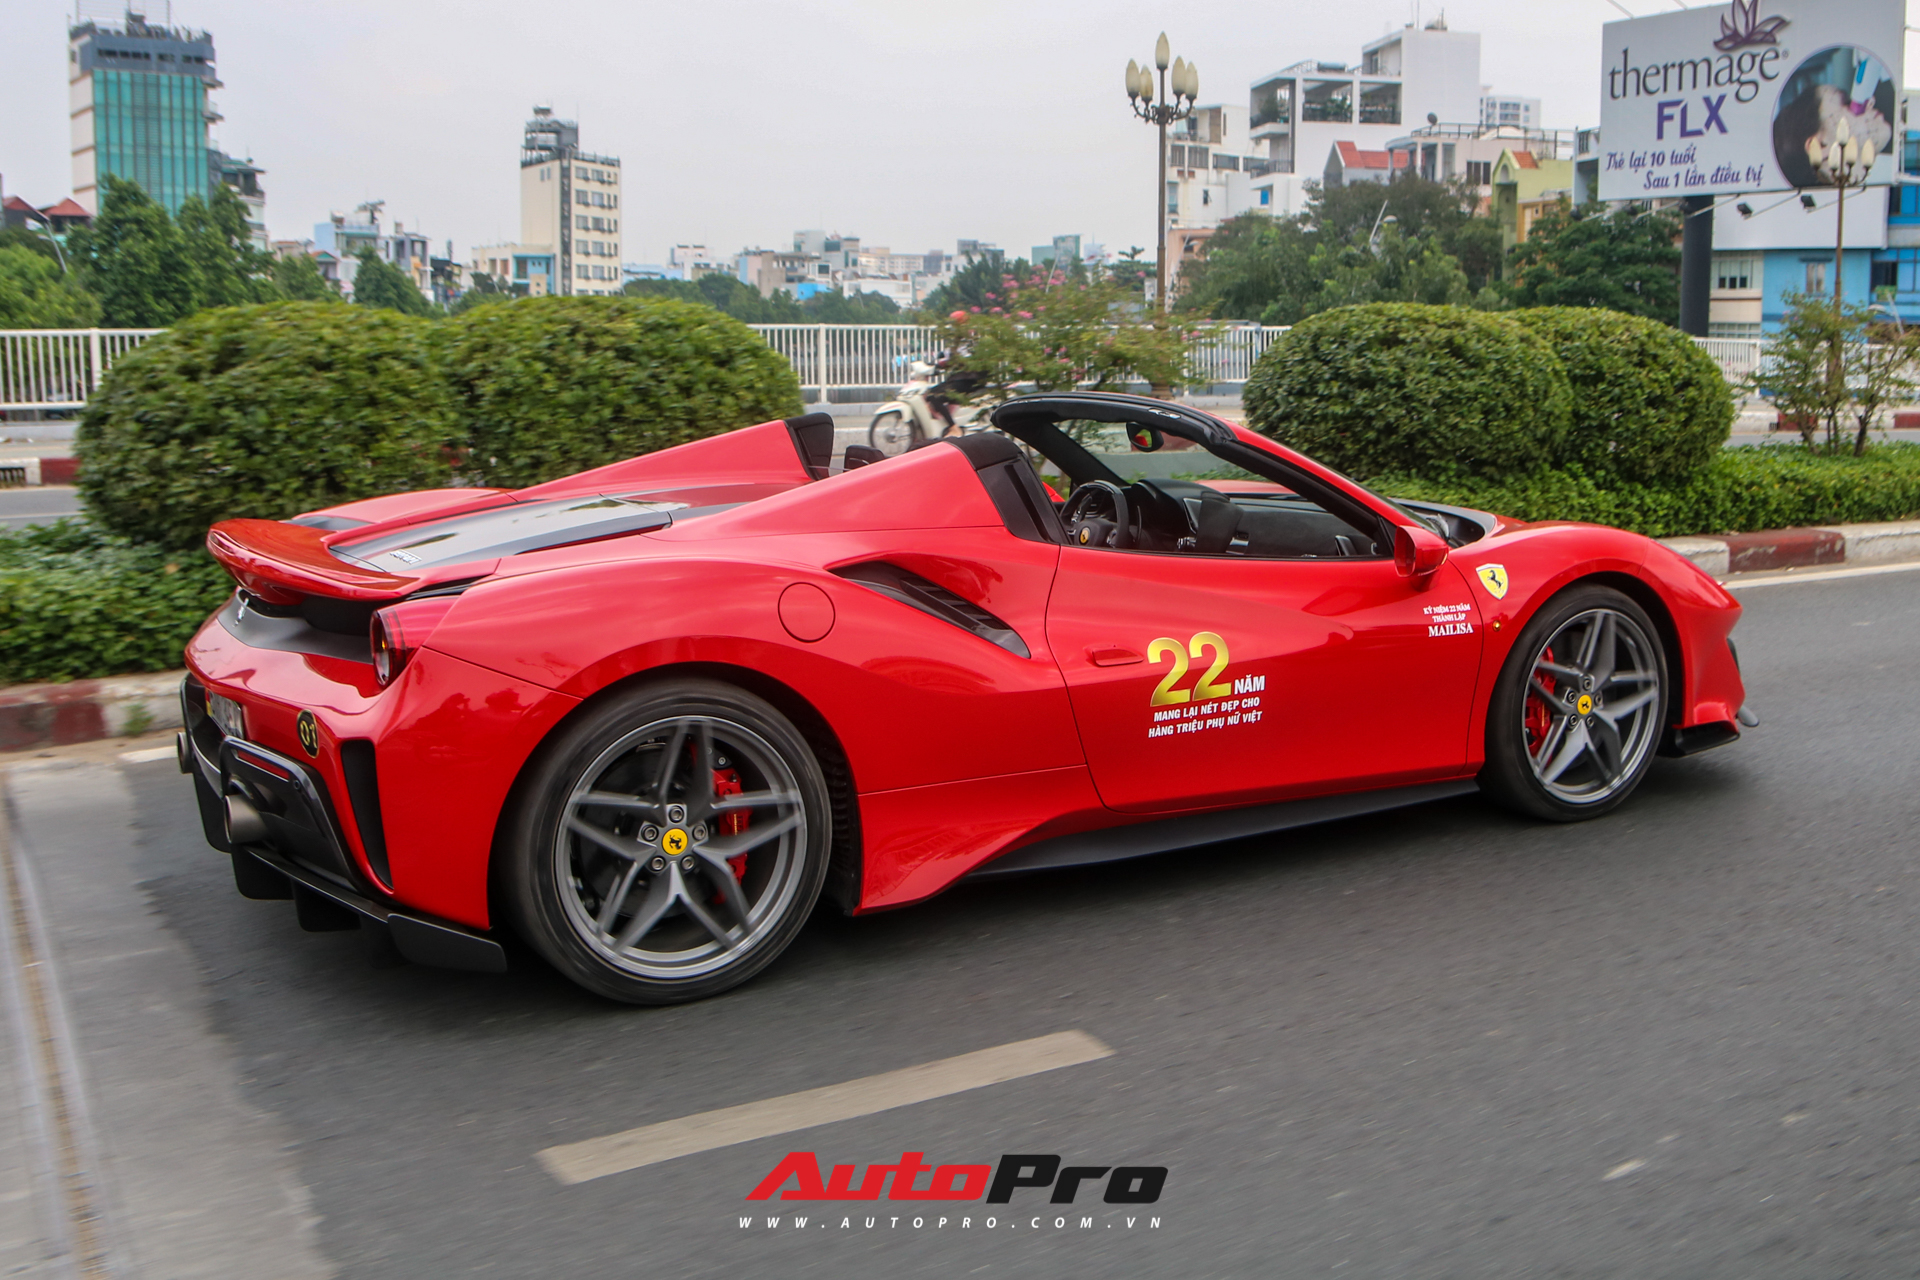 Hoàng Kim Khánh lần đầu cầm lái, khoe khả năng mở mui của Ferrari 488 Pista Spider trên đường phố Việt - Ảnh 3.